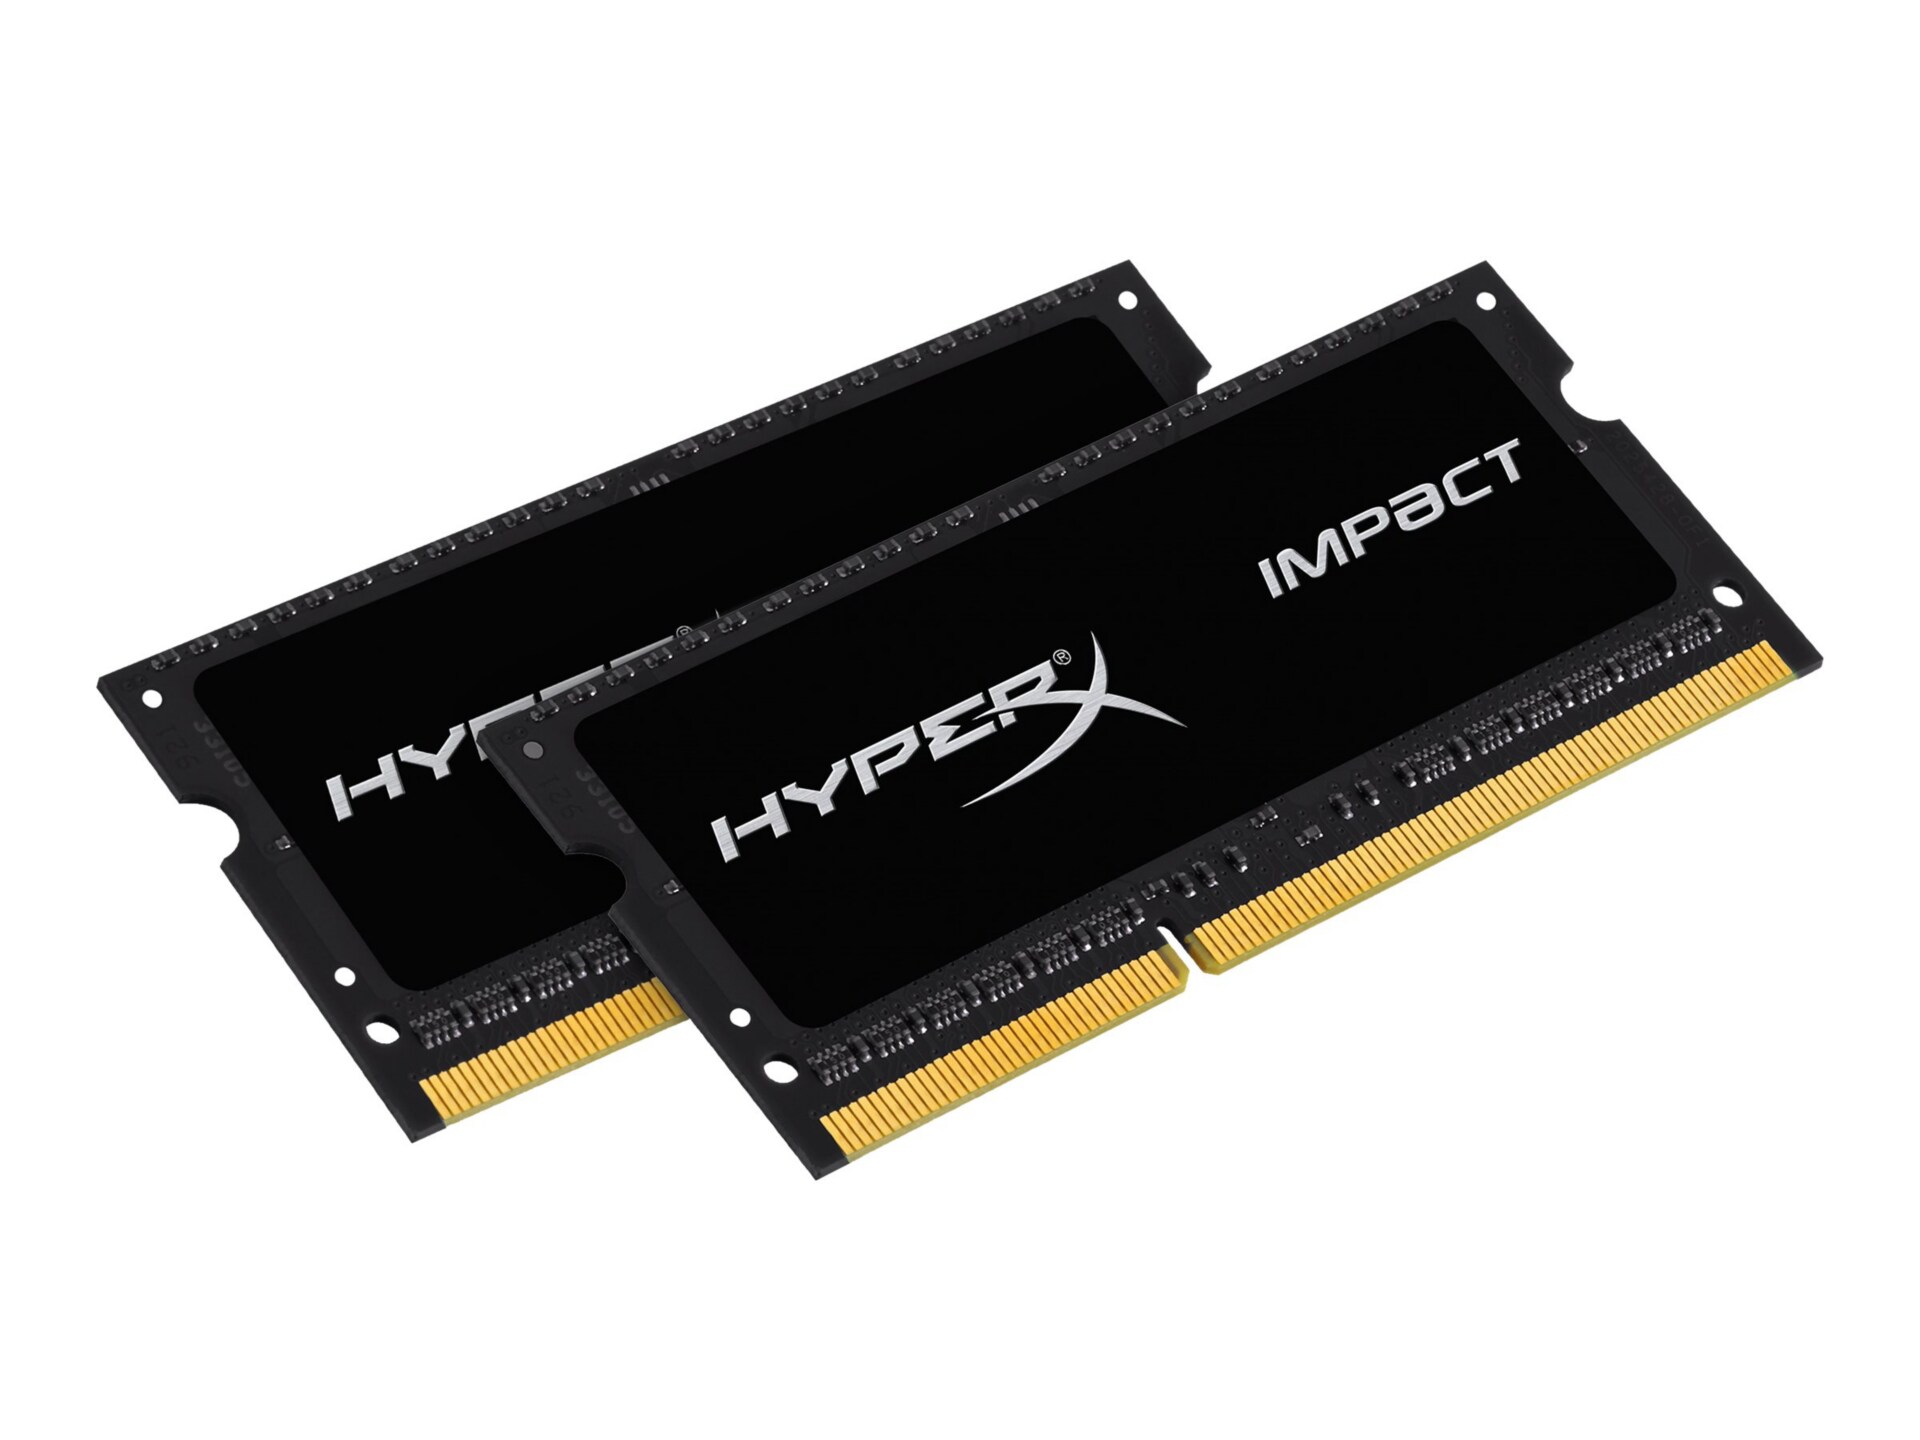 HyperX Impact Black Series - DDR3L - 8 GB: 2 x 4 GB - SO-DIMM 204-pin - unb